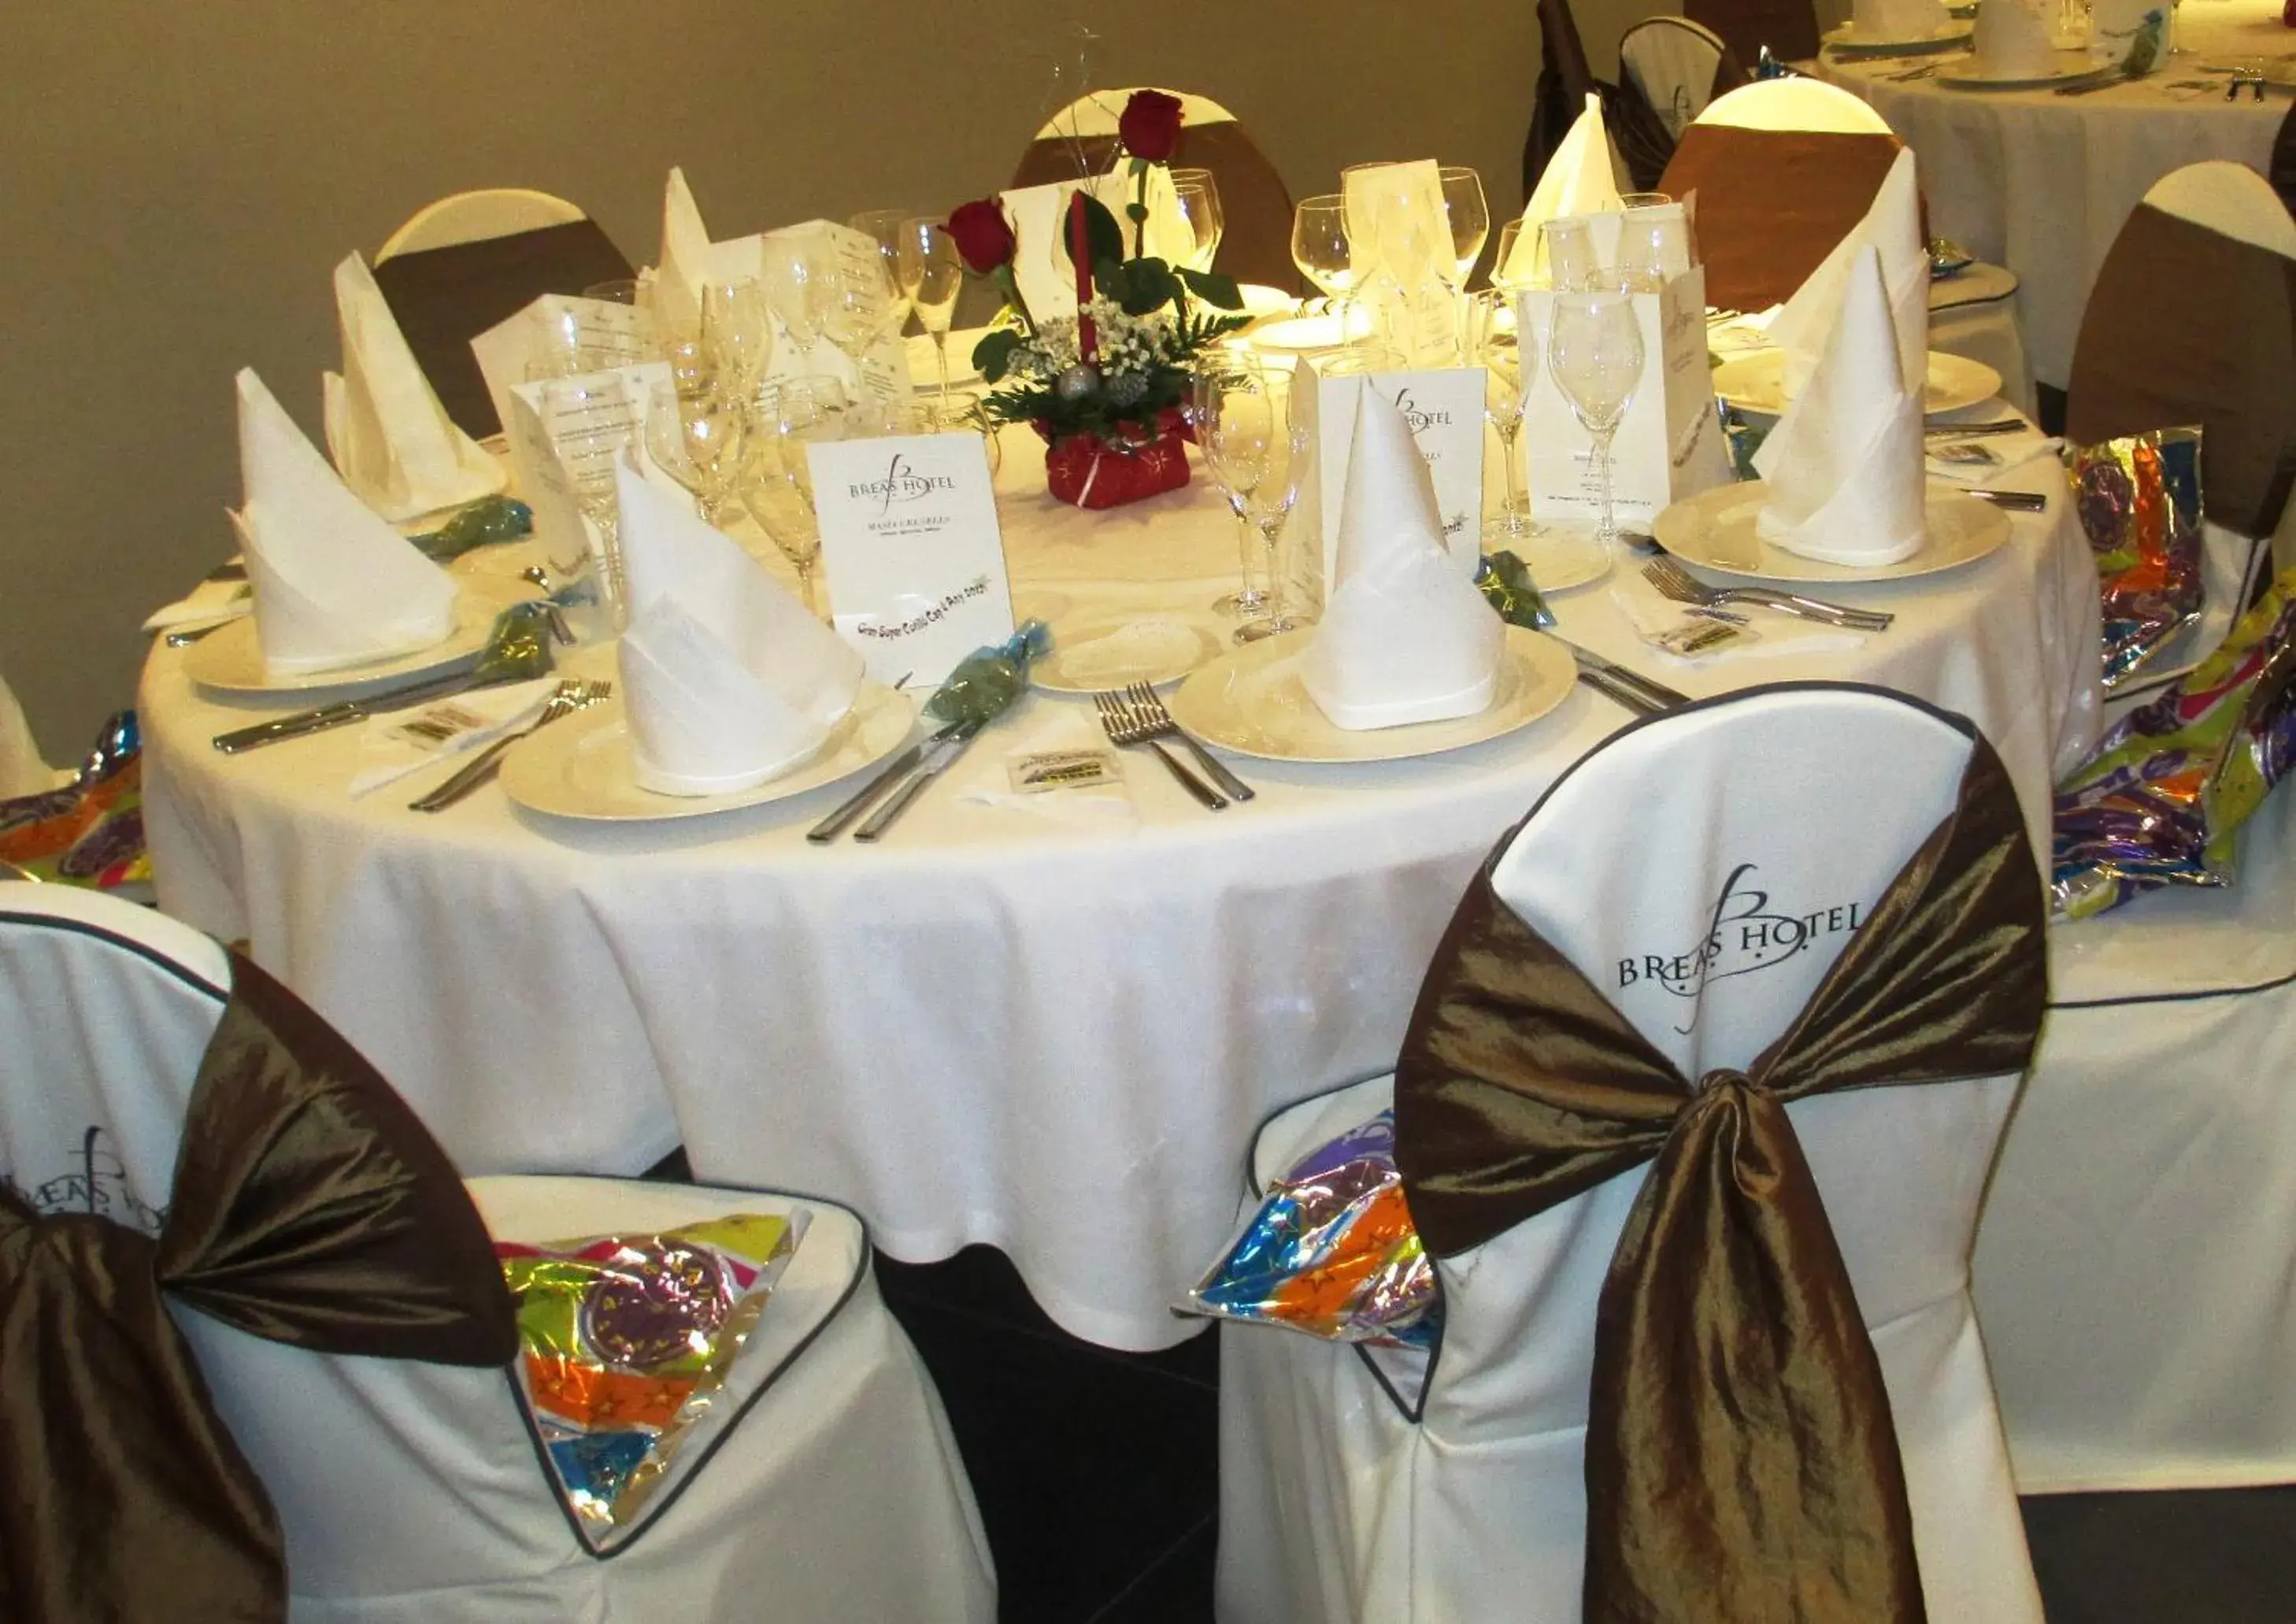 Banquet/Function facilities, Banquet Facilities in Brea's Hotel